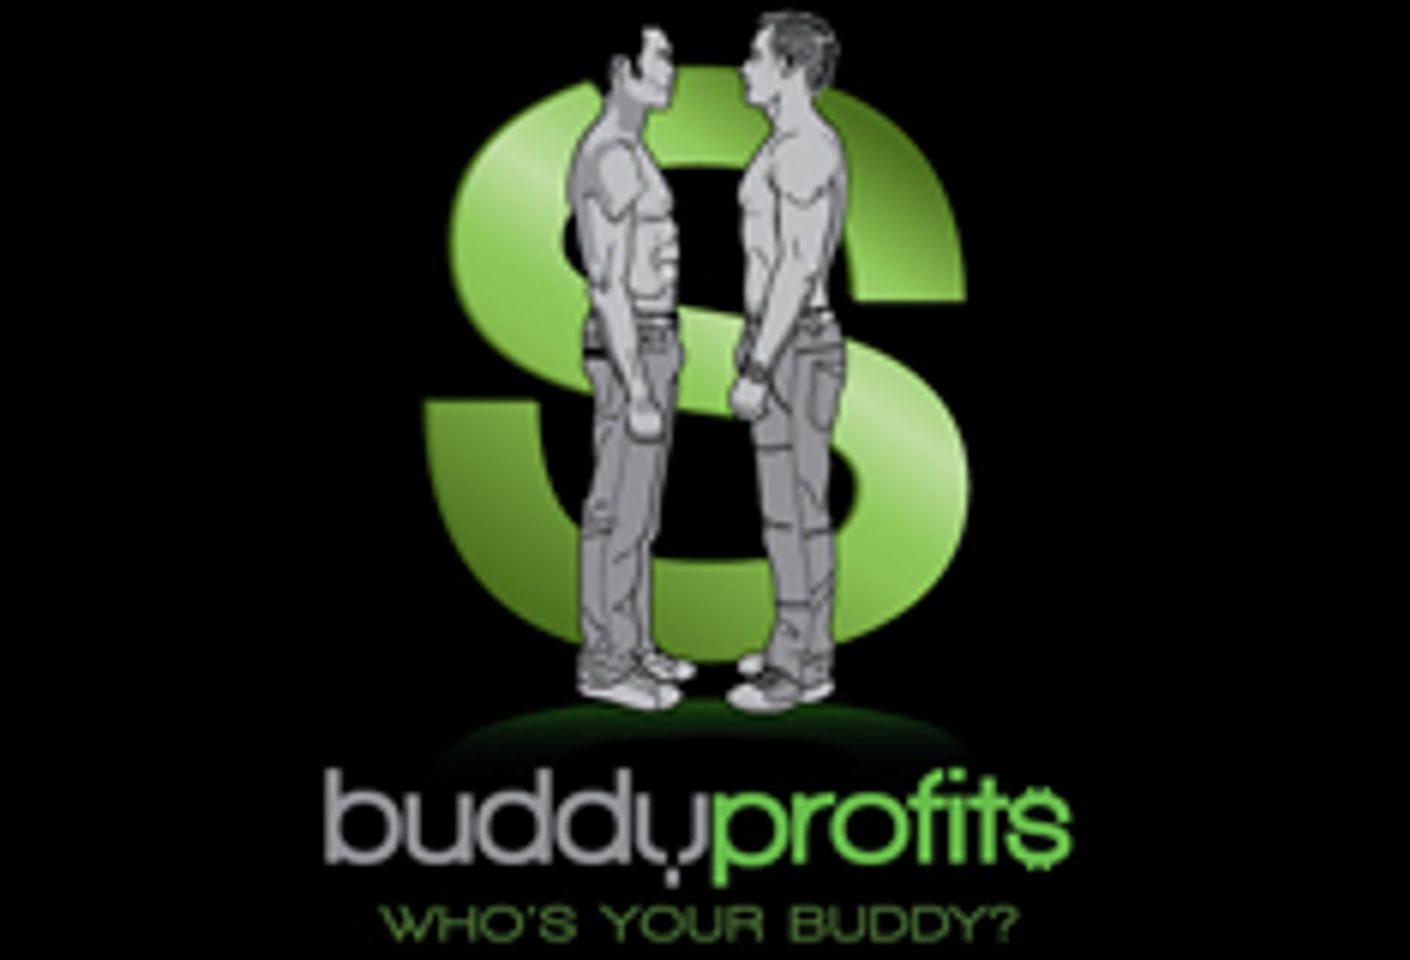 Business Profile | Internet | Buddy Profits